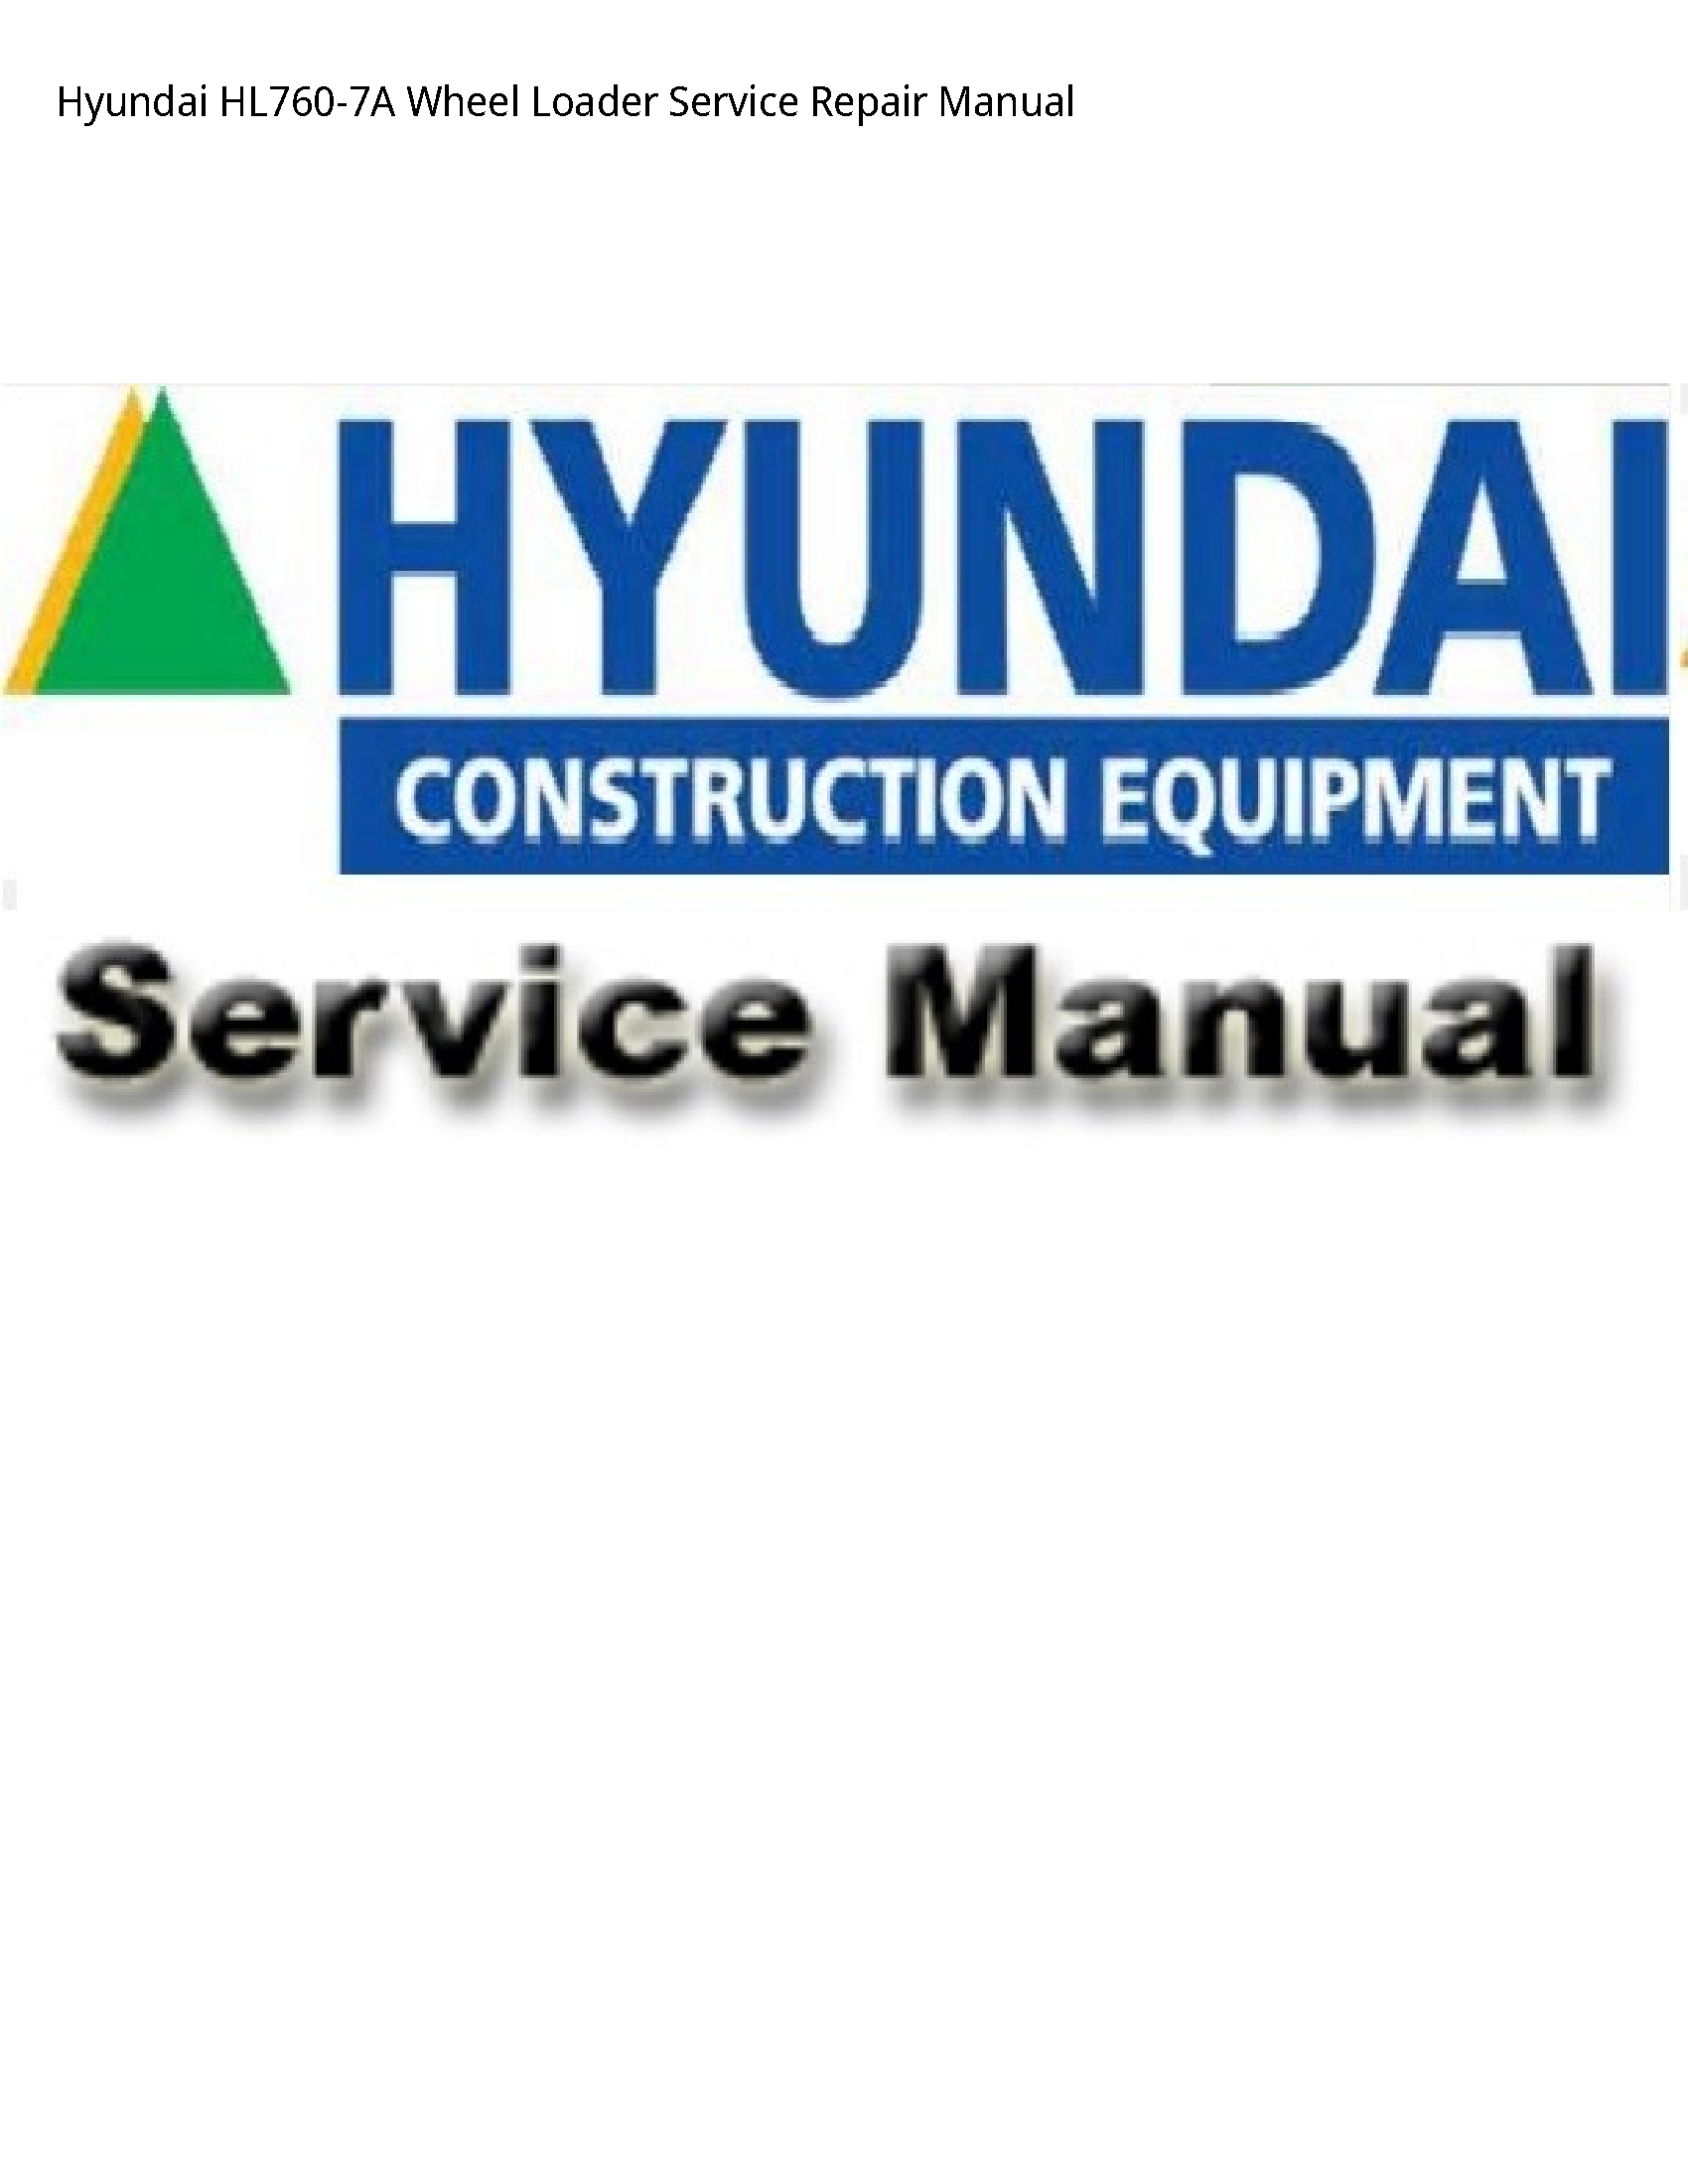 Hyundai HL760-7A Wheel Loader manual